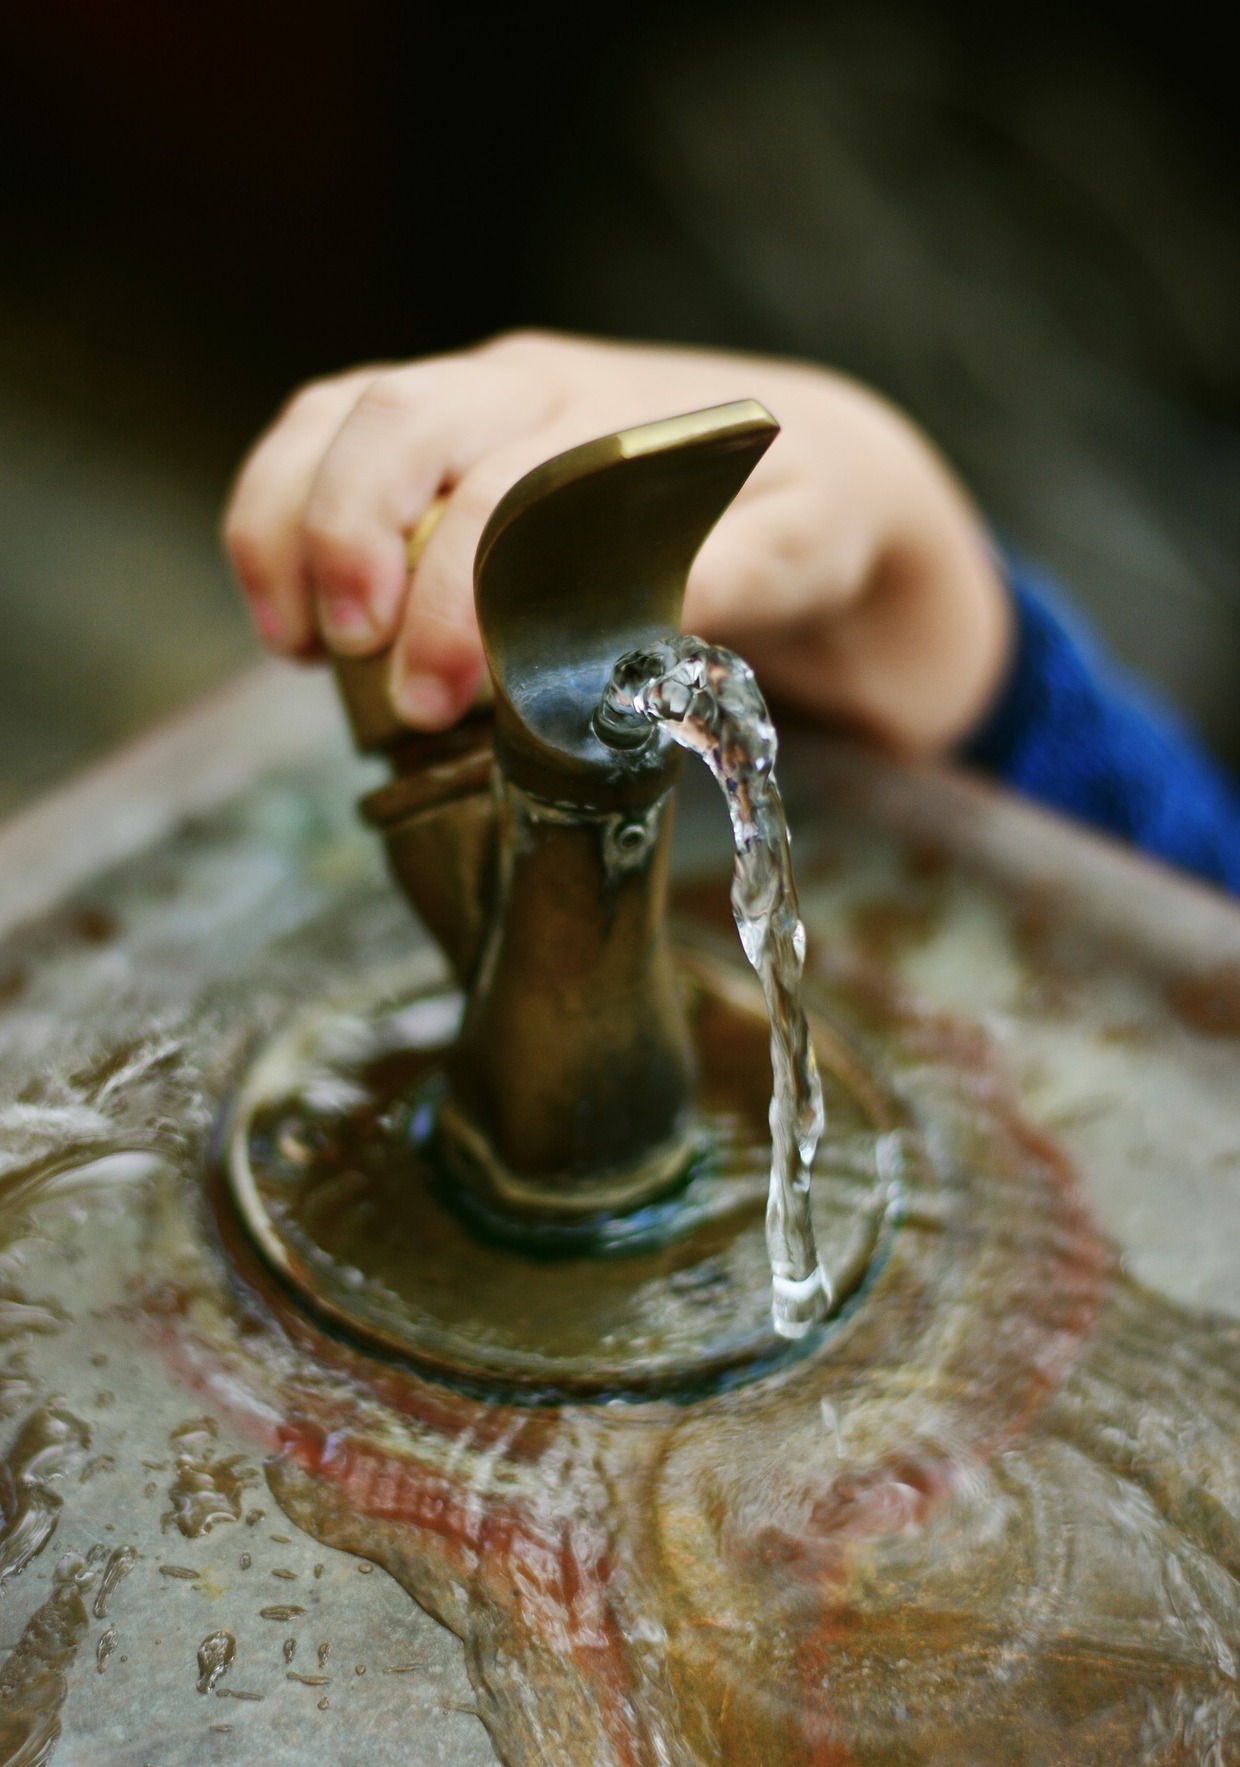 Bushwick Public Schools Found High Levels of Lead in Drinking Water